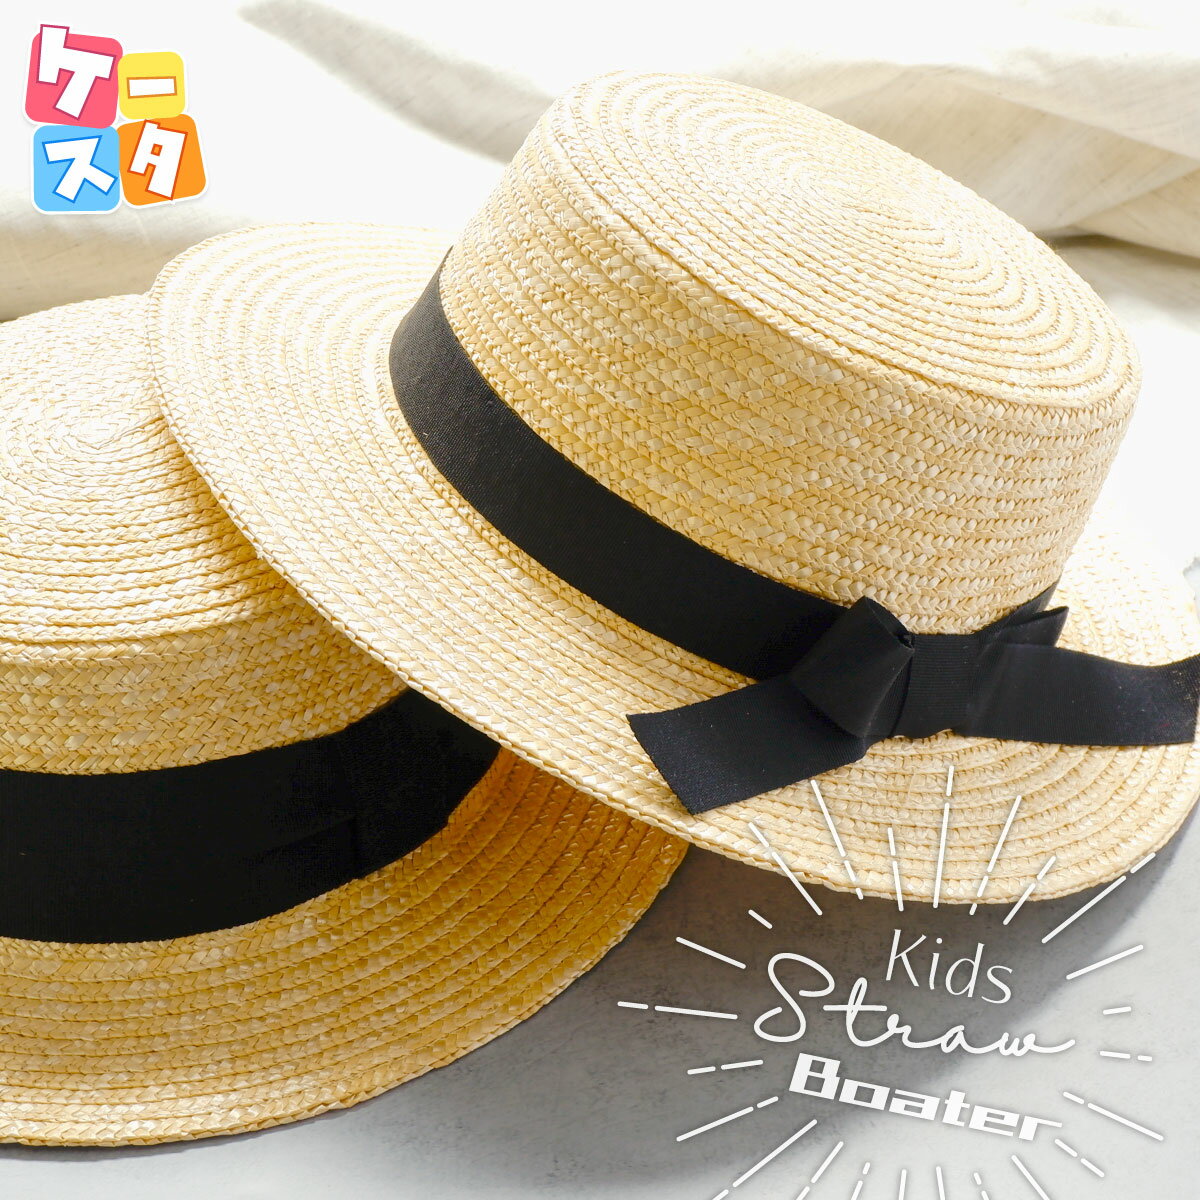 麦わら素材で出来た夏の大定番・カンカン帽。通気性も良く、帽子の内側にスベリ(汗止め)付なので暑い季節にぴったり。麦わら天然素材100%ならではの美しい光沢と、コシに巻かれたシンプルなリボンが見た目にも涼しげ。リボン飾りは約4.5cmの幅広のリボンを巻きつけたスタイル(Aタイプ)に加え、2.5cm幅の細身のリボンを蝶結びにしたデザイン(Bタイプ)もご用意しました。日差しの強い季節の紫外線対策・熱中症対策に最適です。 ＜サイズ調整可能(アジャスター付)＞ ＜ストラップループ付(ストラップは別売)＞ ◆ Item Information サイズ 頭まわり つば 深さ FREE 約56cm 約6cm 約9cm リボン幅：タイプA 約4.5cm /タイプB 約2.5cm 【素材】本体：天然草木(麦わら)100% / リボン：ポリエステル100% 【生産国】中国製 【バリエーション】Aタイプ(つき合わせ) / Bタイプ(蝶結び) 【備考】 ・【専用ハットクリップ/ストラップ(日本製)】の購入はこちら ・【専用ストラップ】の購入はこちら ・直射日光や蛍光灯の長時間の照射で色あせすることがあります。 ・商品写真はできる限り実物を再現するよう心掛けておりますが、モニター・ブラウザ等ご利用環境により色味等差異が生じる場合がありますのであらかじめご了承ください。キッズ麦わらカンカン帽[Kids Straw Boater] - Kstyle - 麦わら素材で出来た夏の大定番・カンカン帽。通気性も良く、帽子の内側にスベリ(汗止め)付なので暑い季節にぴったり。麦わら天然素材100%ならではの美しい光沢と、コシに巻かれたシンプルなリボンが見た目にも涼しげ。リボン飾りは約4.5cmの幅広のリボンを巻きつけたスタイル(Aタイプ)に加え、2.5mm幅の細身のリボンを蝶結びにしたデザイン(Bタイプ)もご用意しました。日差しの強い季節の紫外線対策・熱中症対策に最適です。 color variation Aタイプ Bタイプ details [Type-A] details [Type-B] spectification